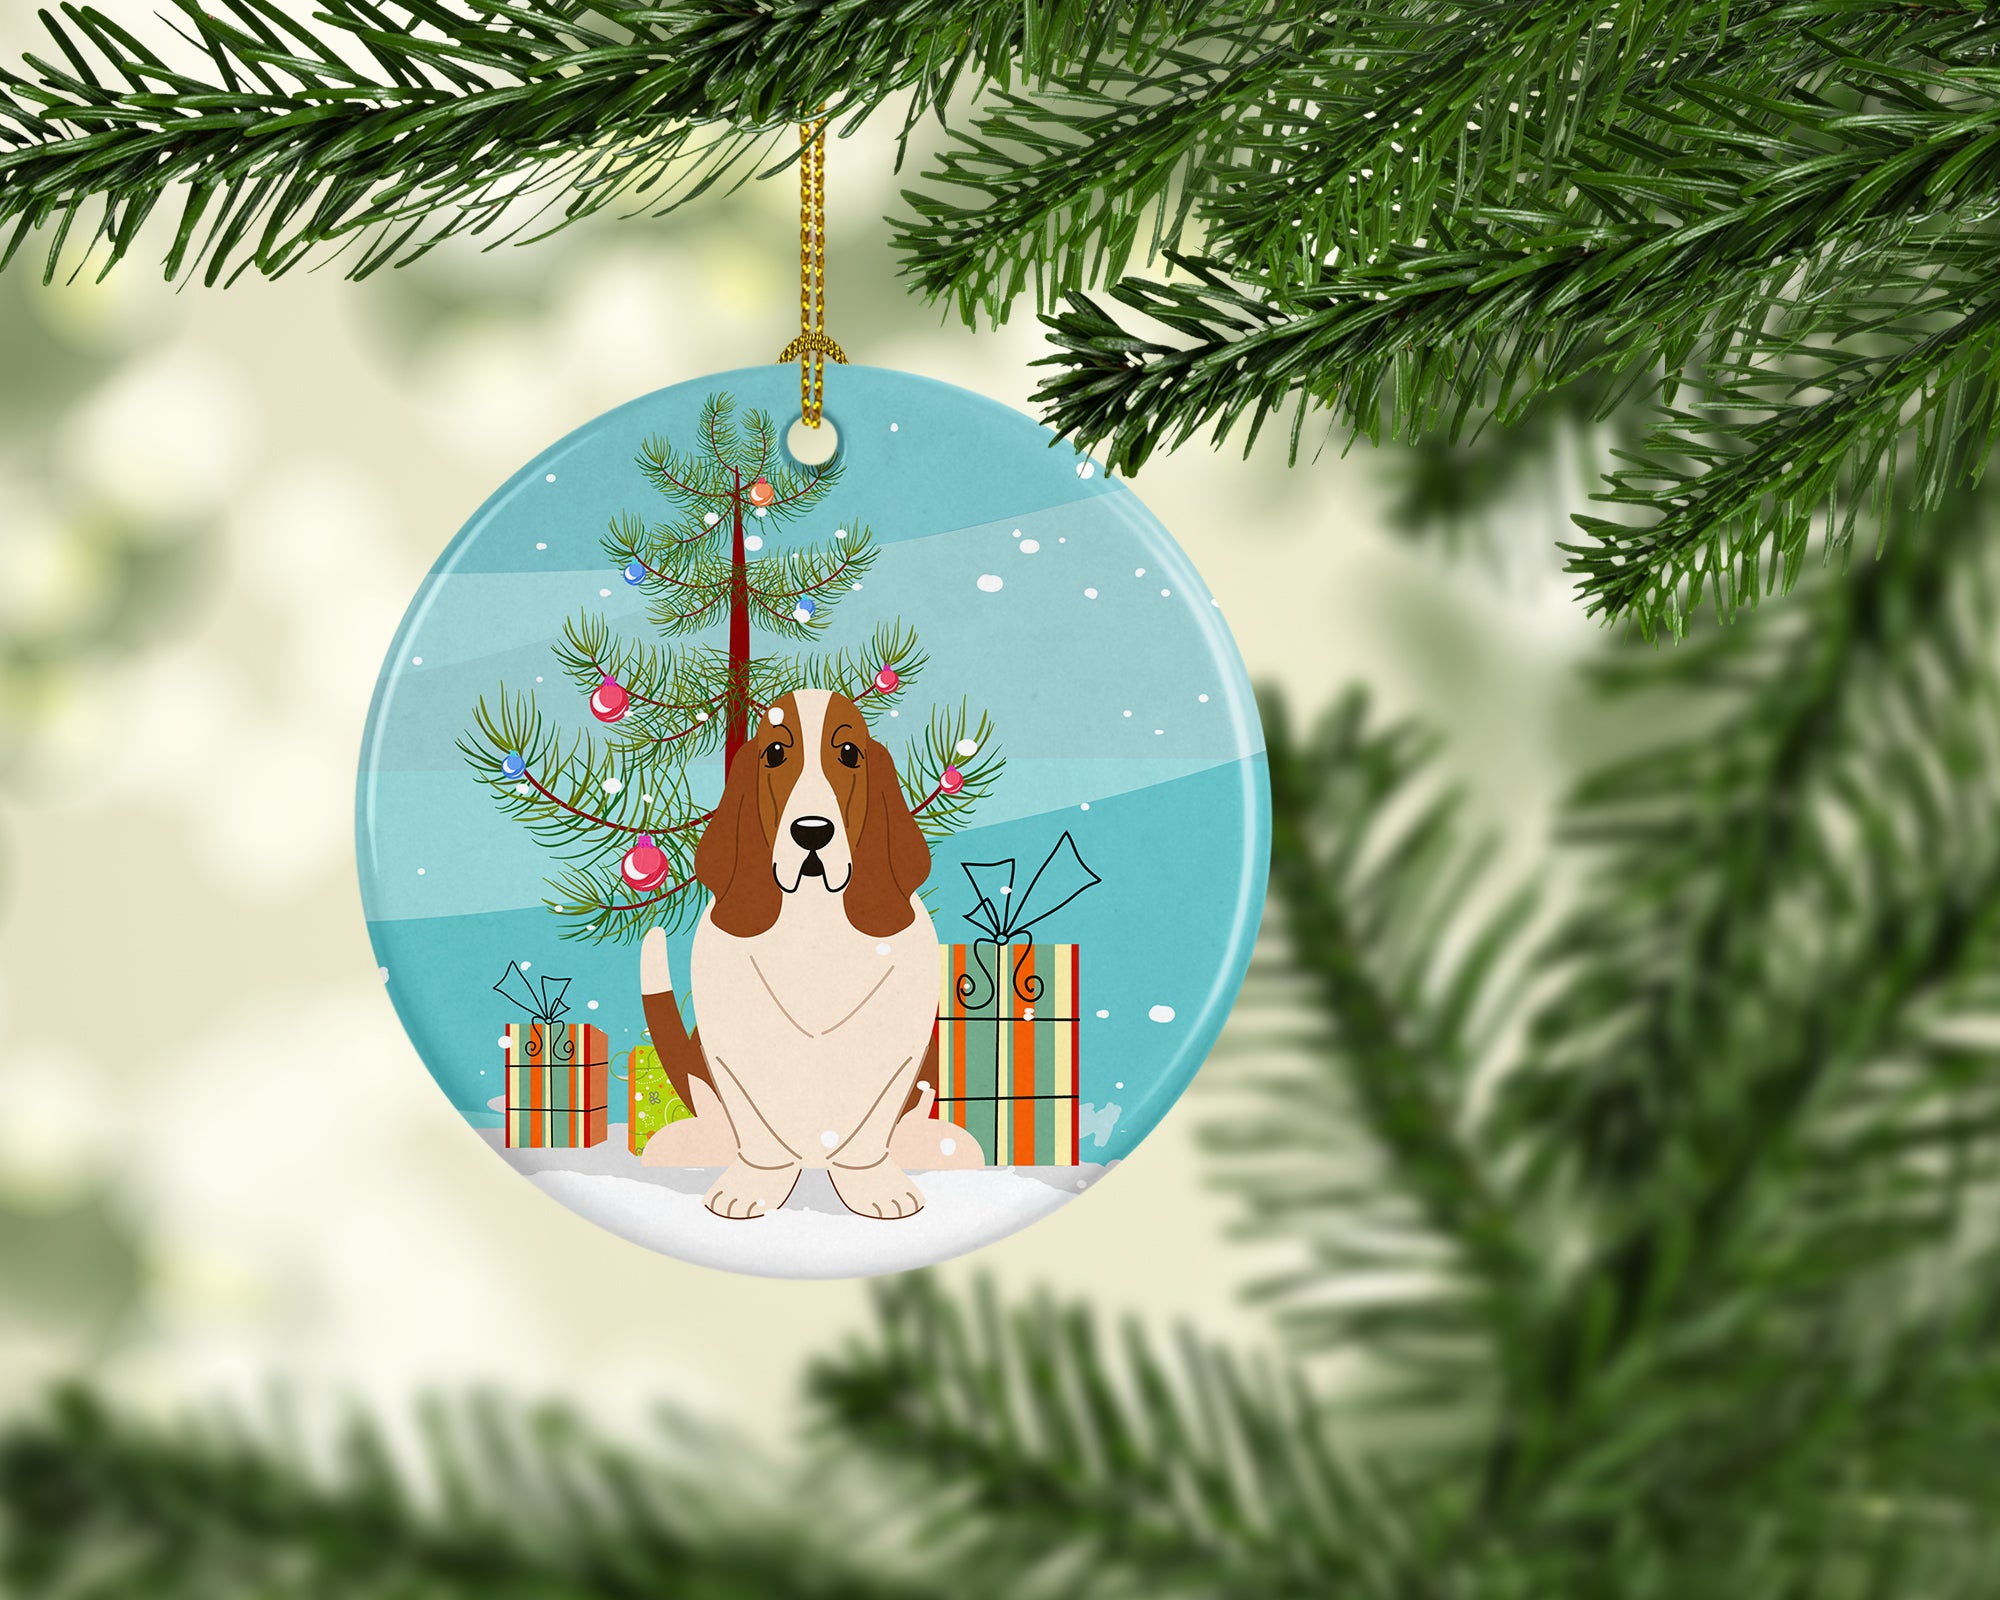 Merry Christmas Tree Basset Hound Ceramic Ornament BB4146CO1 - the-store.com